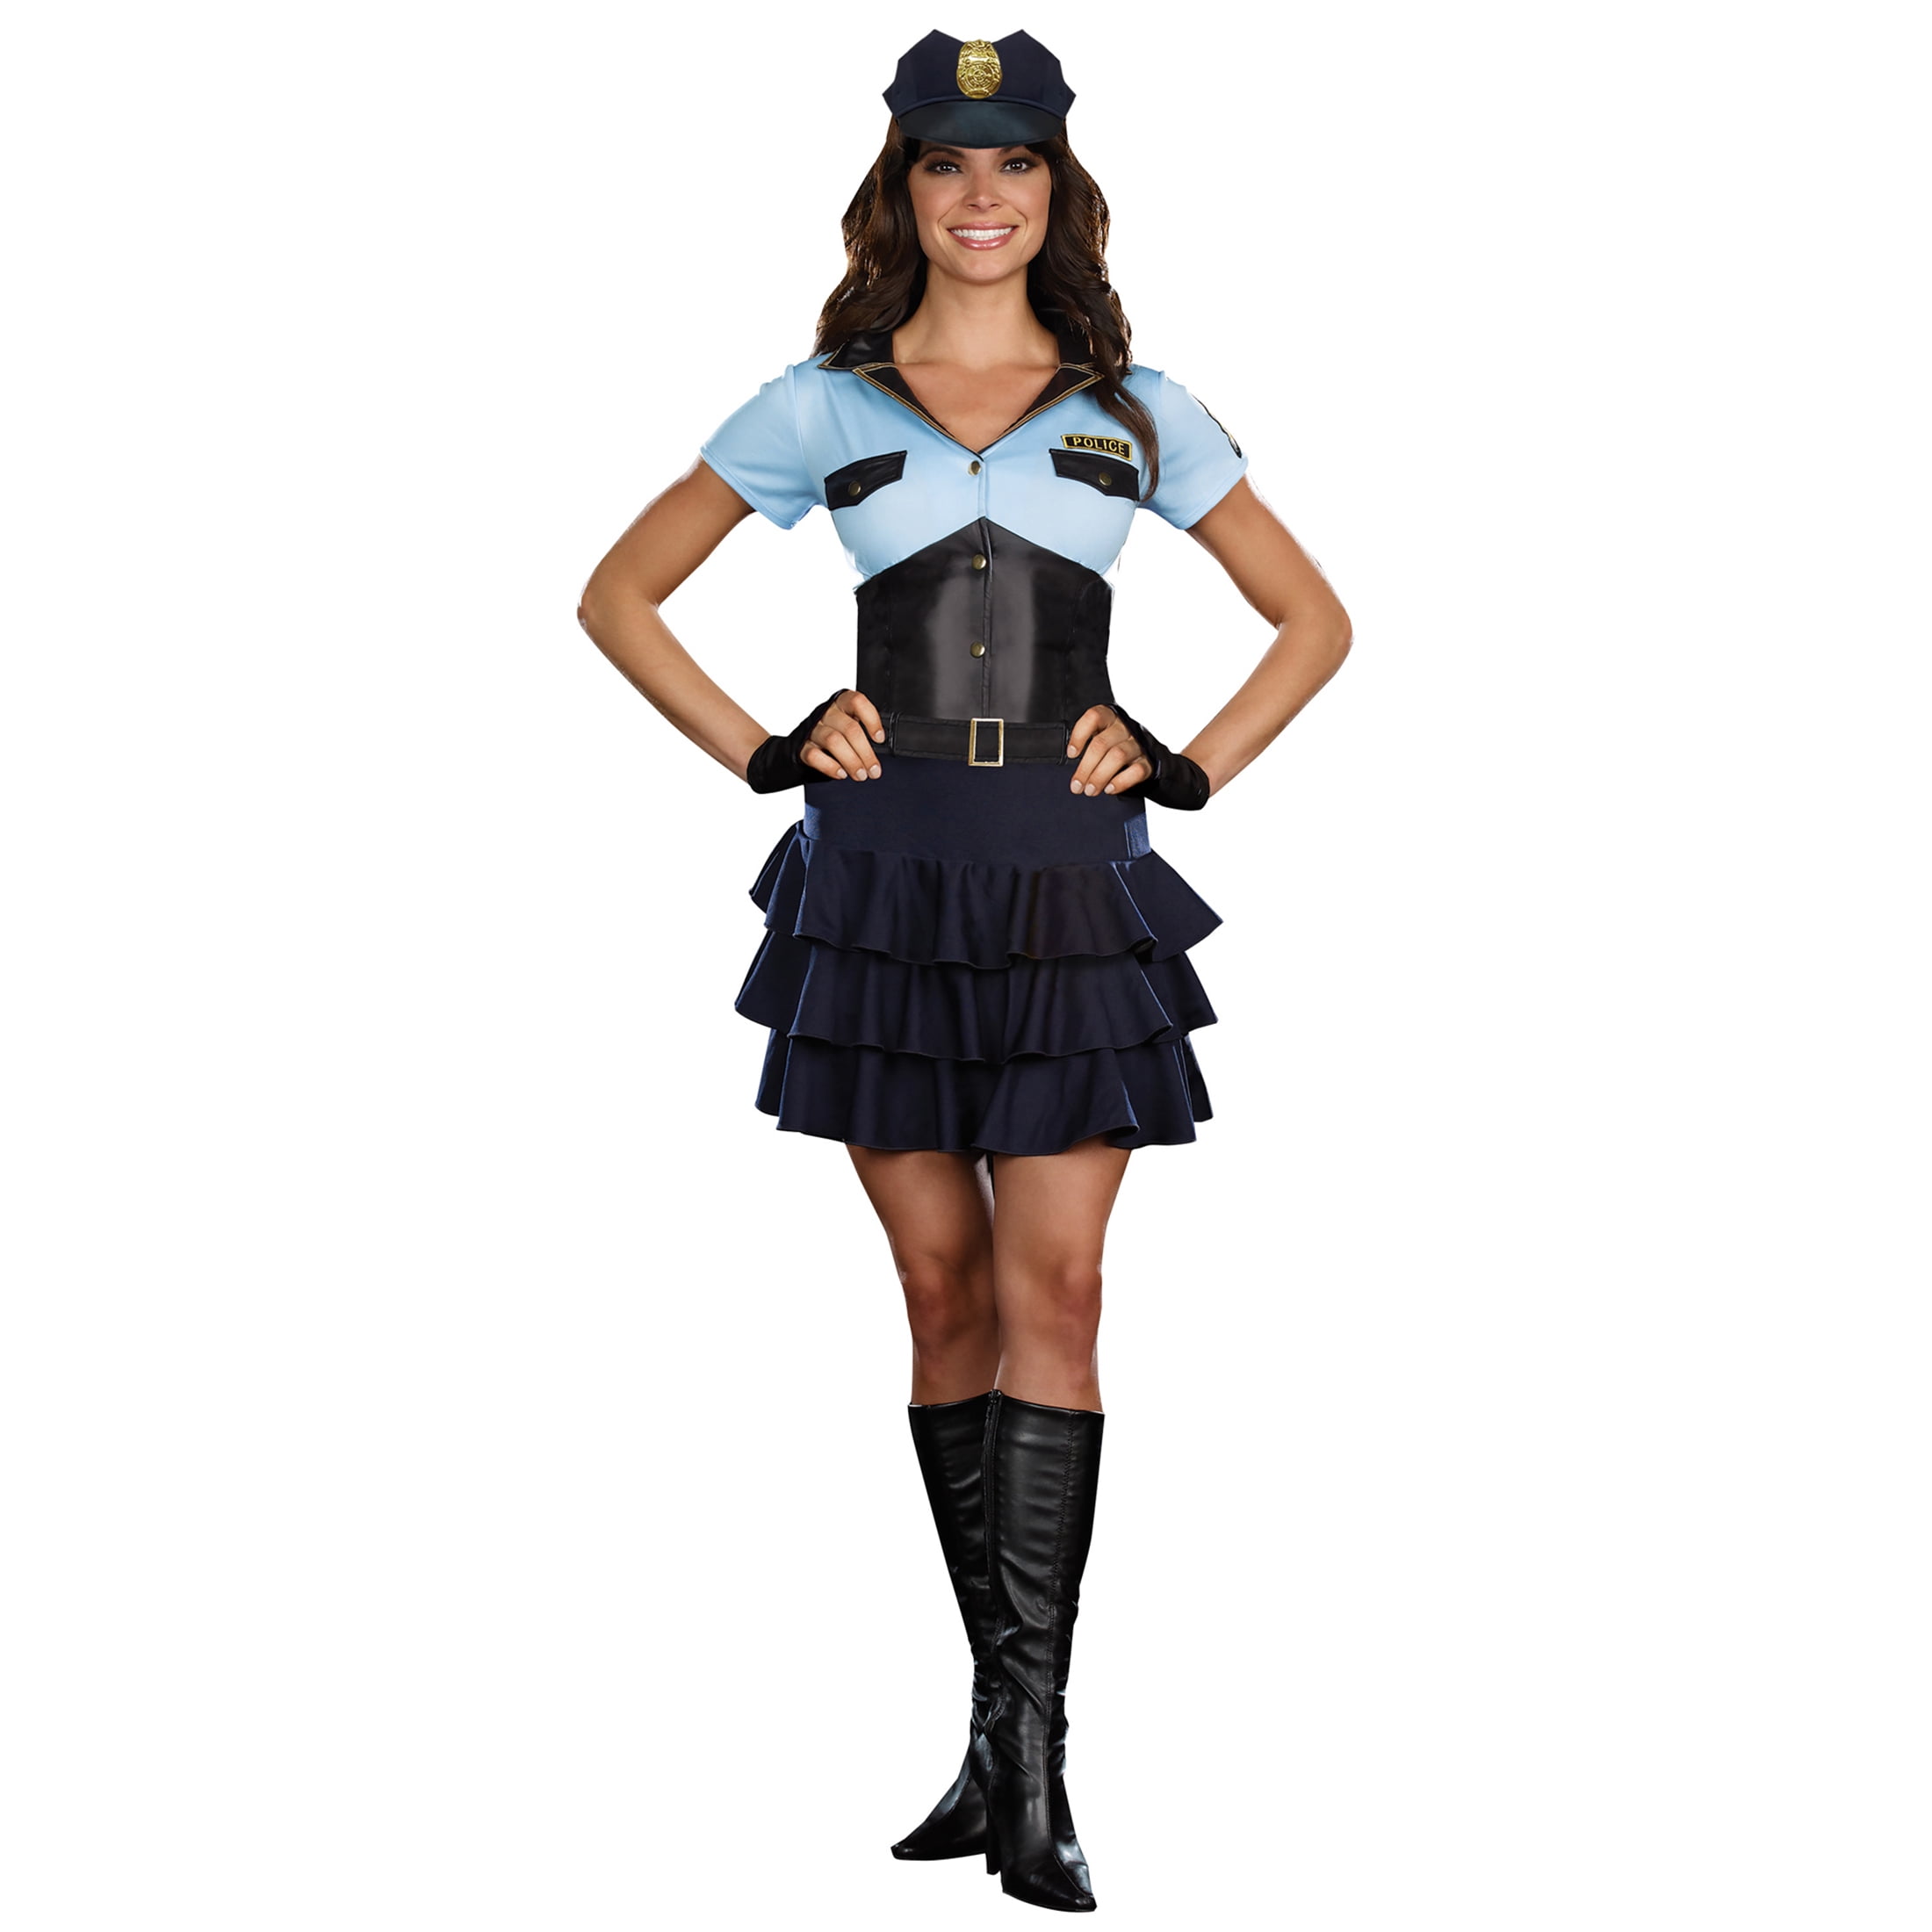 Halloween Policeman Cop Costume Police Officer Suit For Men Women